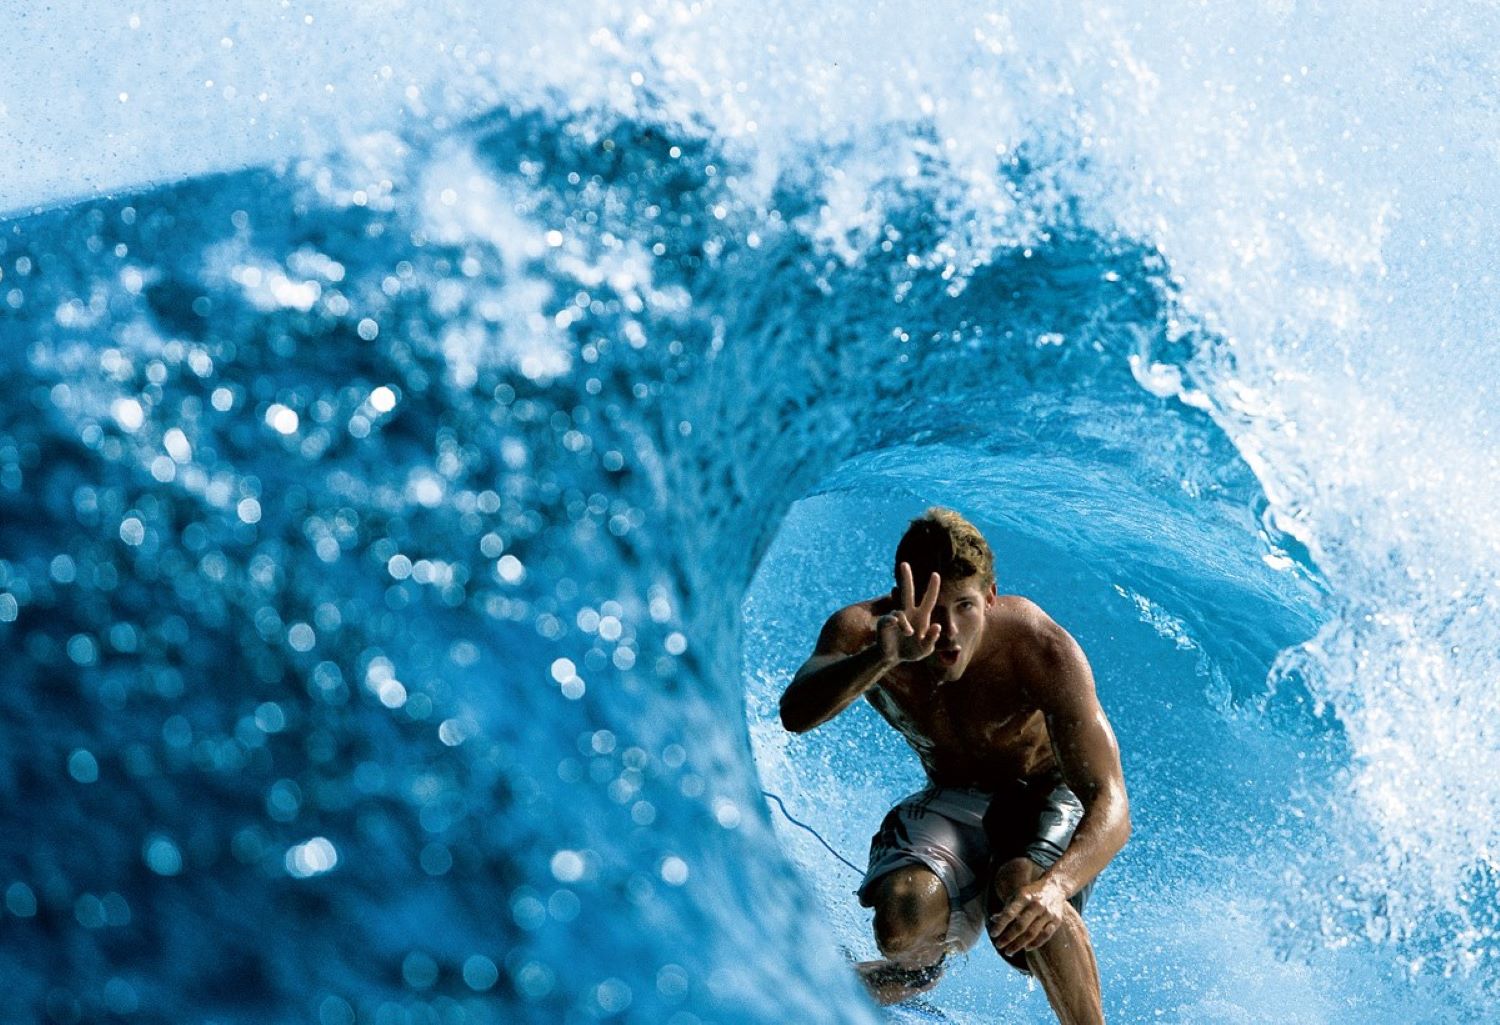 Saiba quem é o Andy Irons e por que ele é considerado, no universo do surfe, um profissional e campeão mundial incompreendido